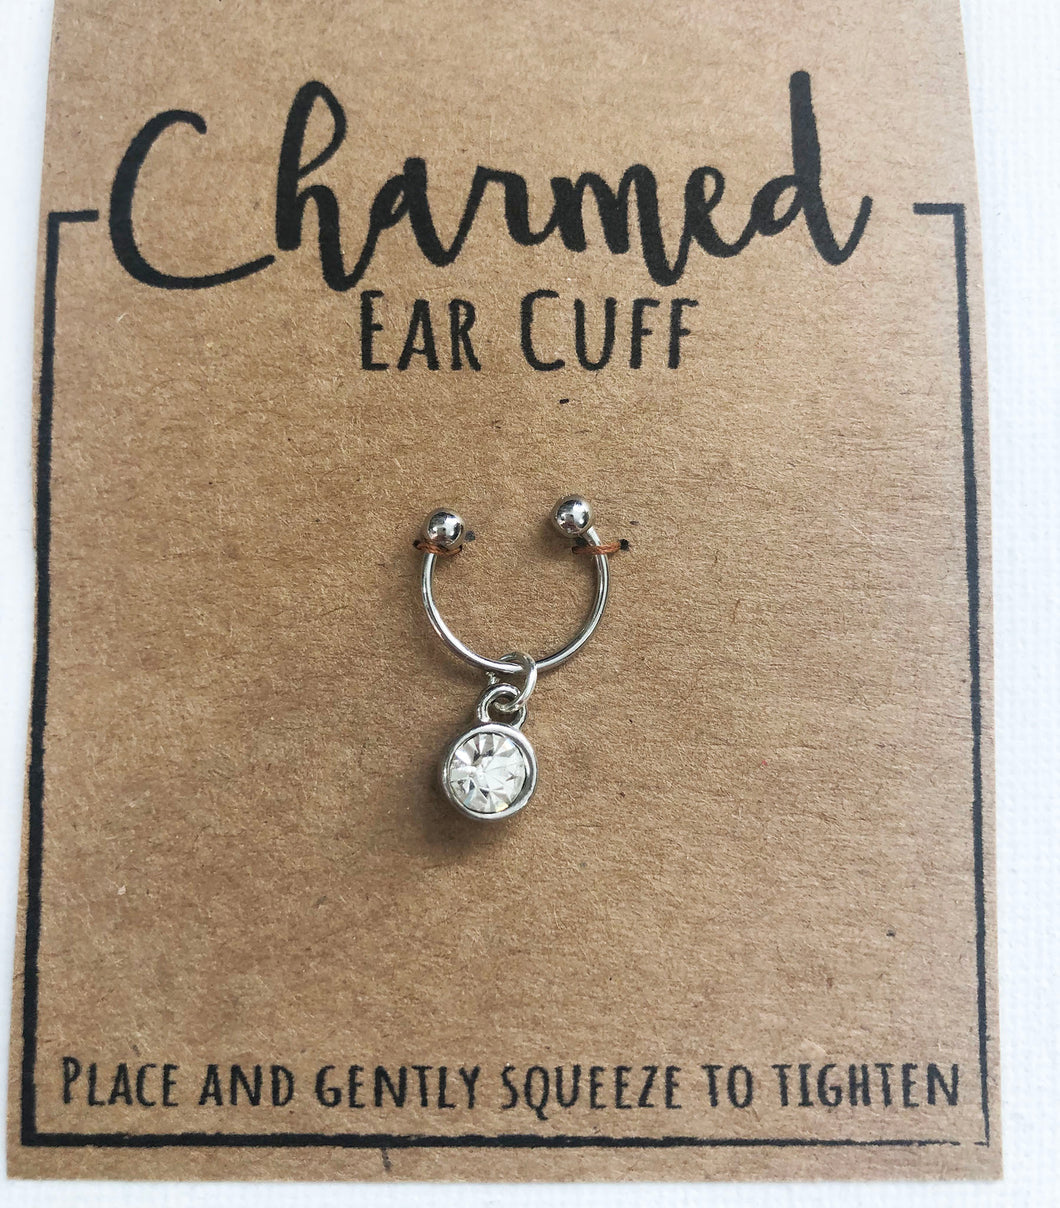 Rhinestone - Charmed Ear Cuff